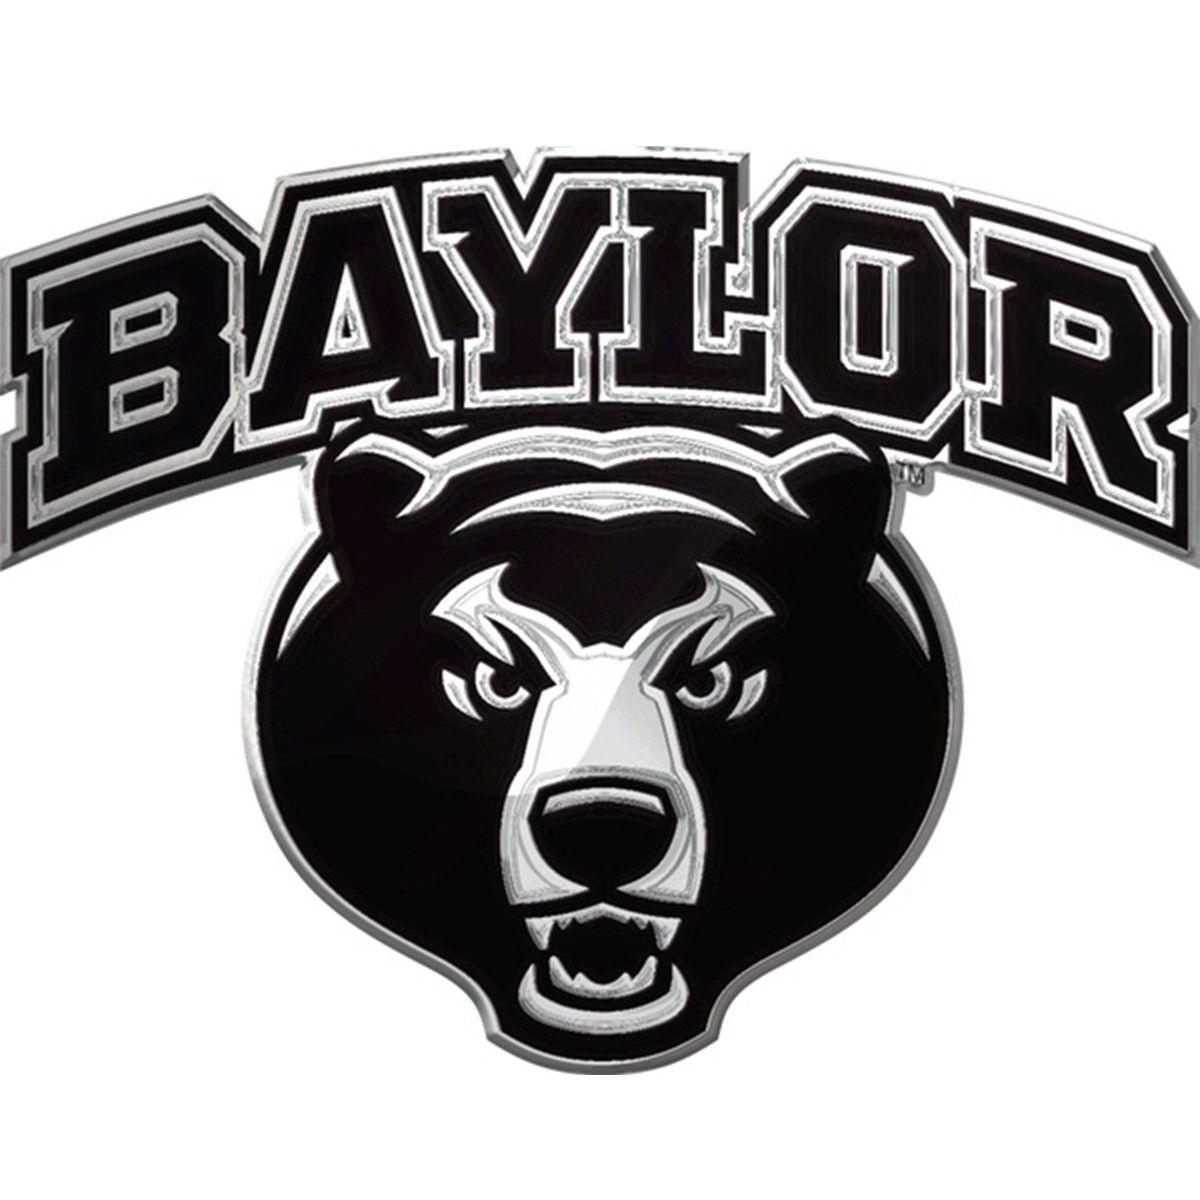 Baylor Bears Logo - Baylor Bears Word-mark NCAA College Team Logo Auto Car